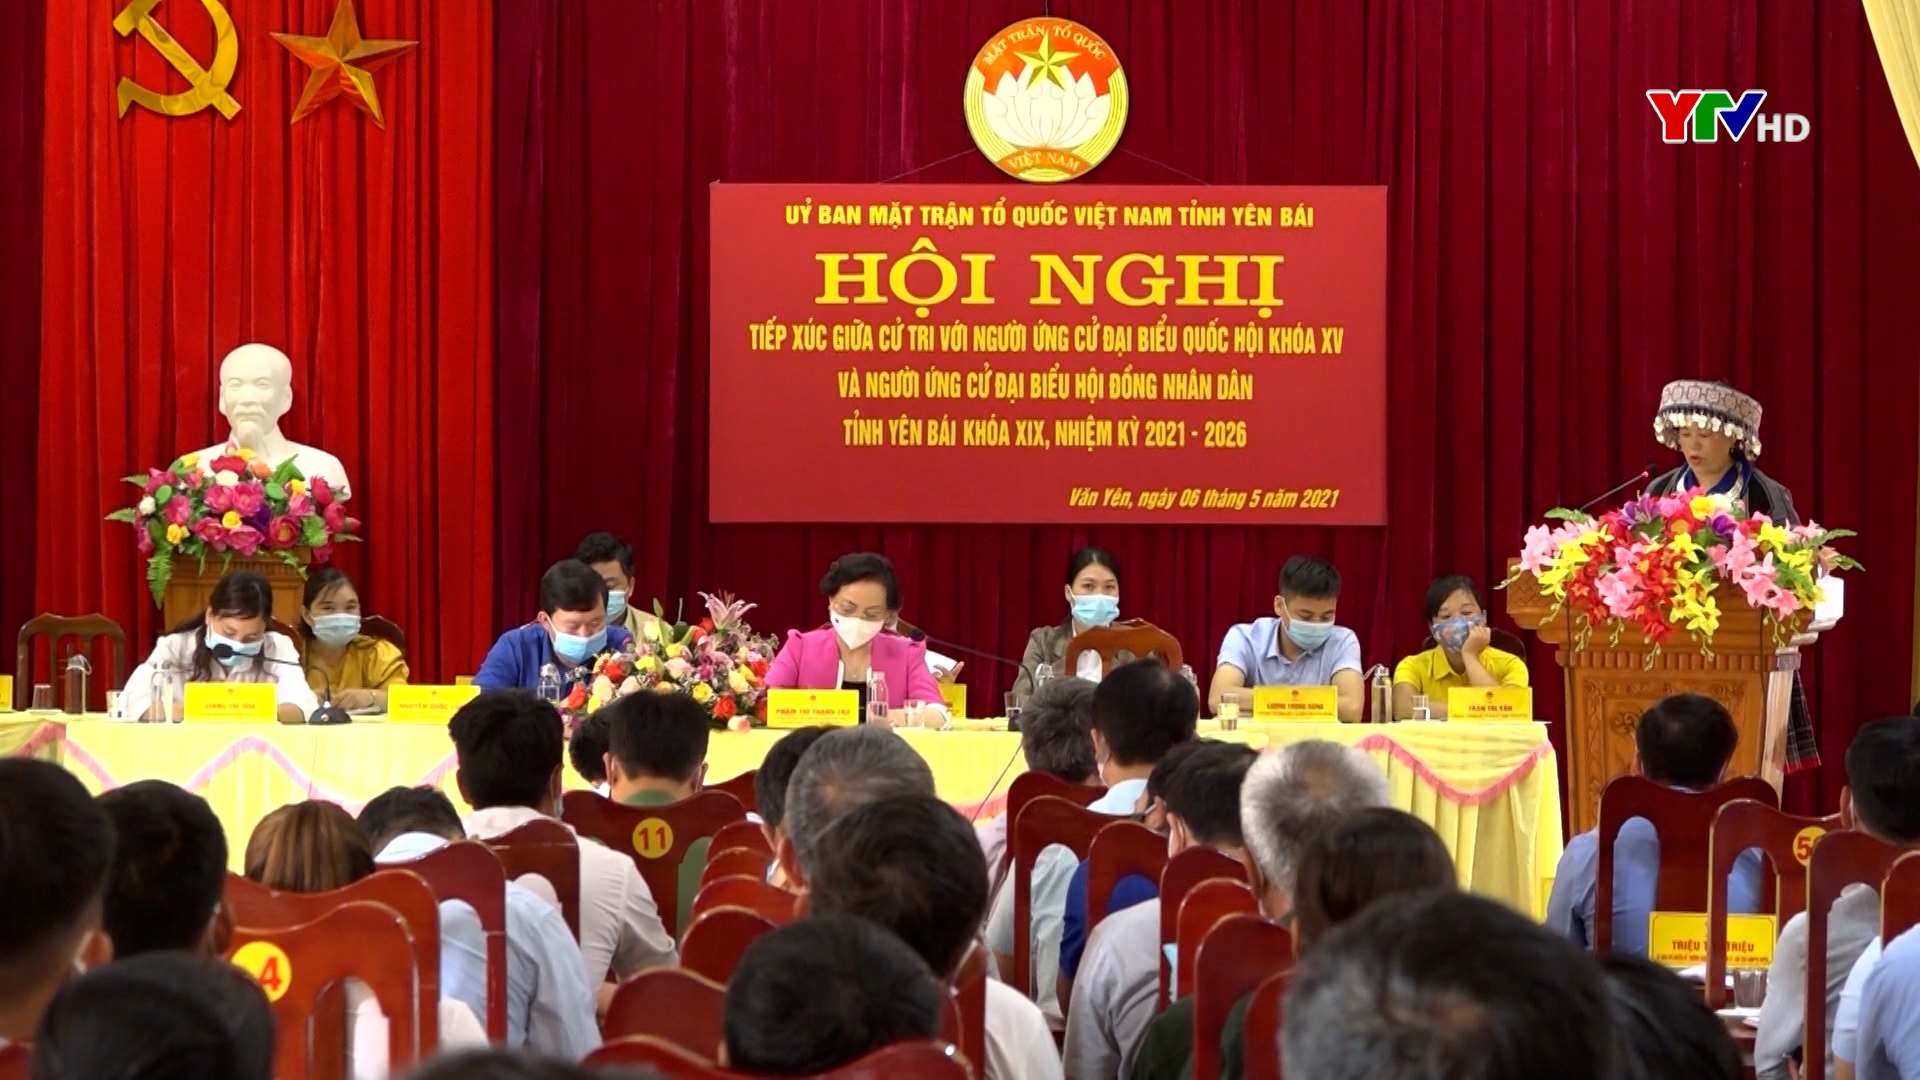 Hội nghị tiếp xúc cử tri với người ứng cử ĐBQH và HĐND tại huyện Văn Yên